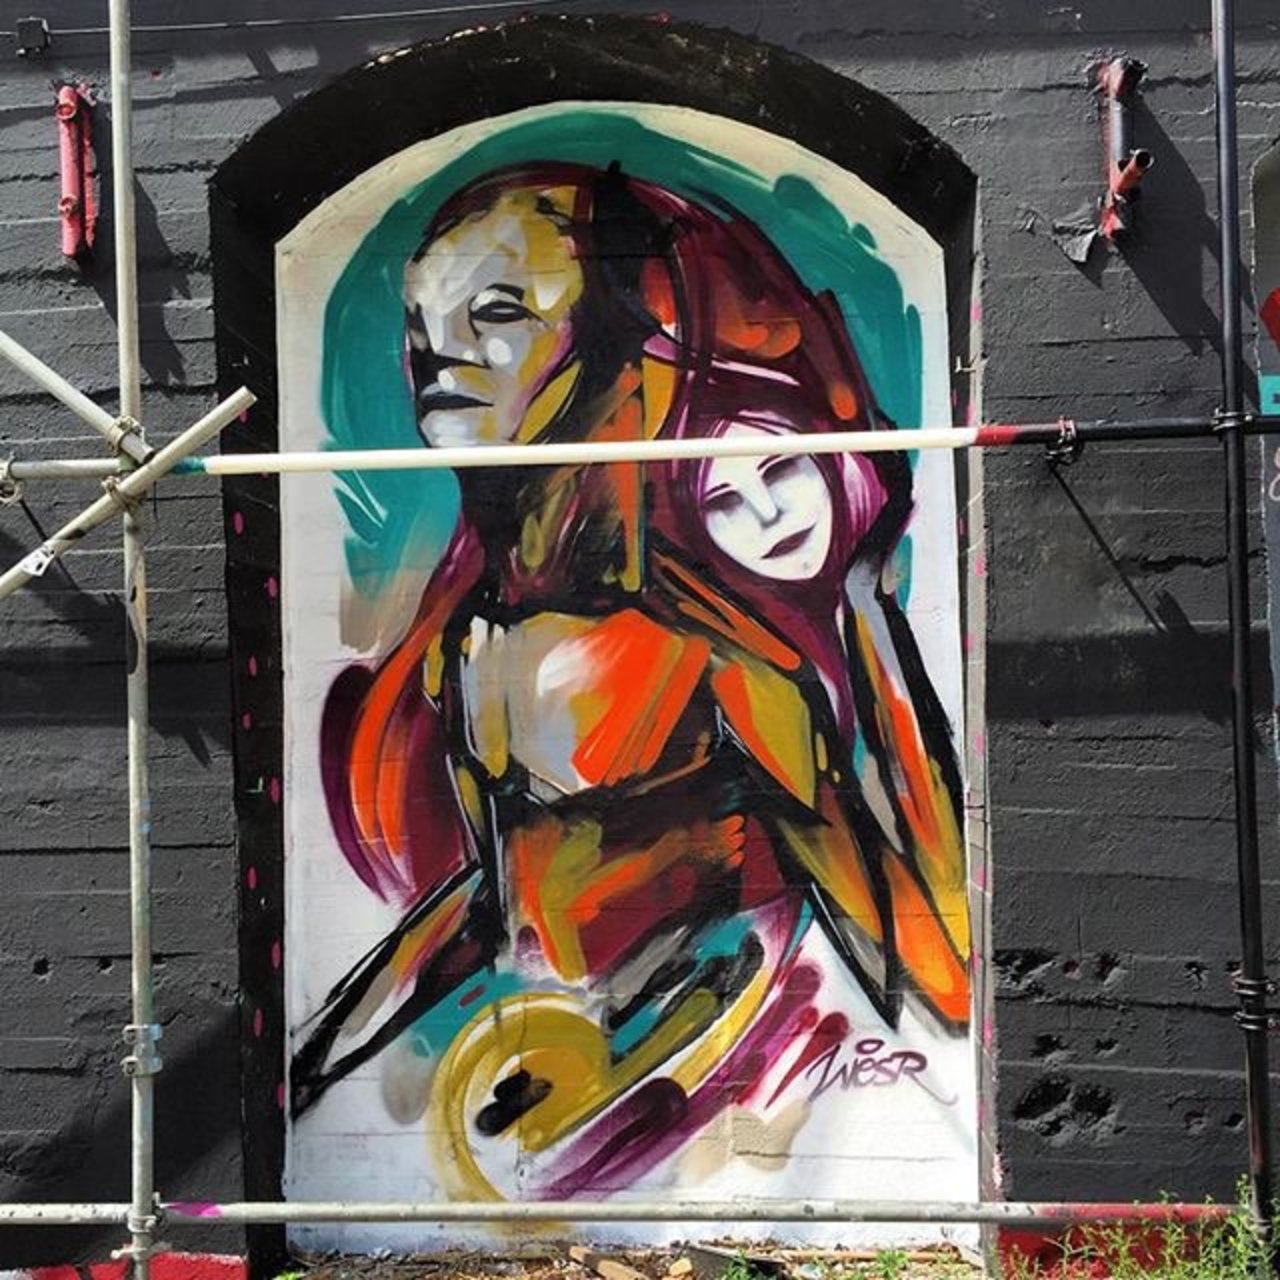 RT @weigeltw: Artist: @w3sr 'One more reason to be alive'  #streetart #streetartberlin #art #graffiti #gatekunst #2015 #urbanart https://t.co/ot7zQJSyxZ